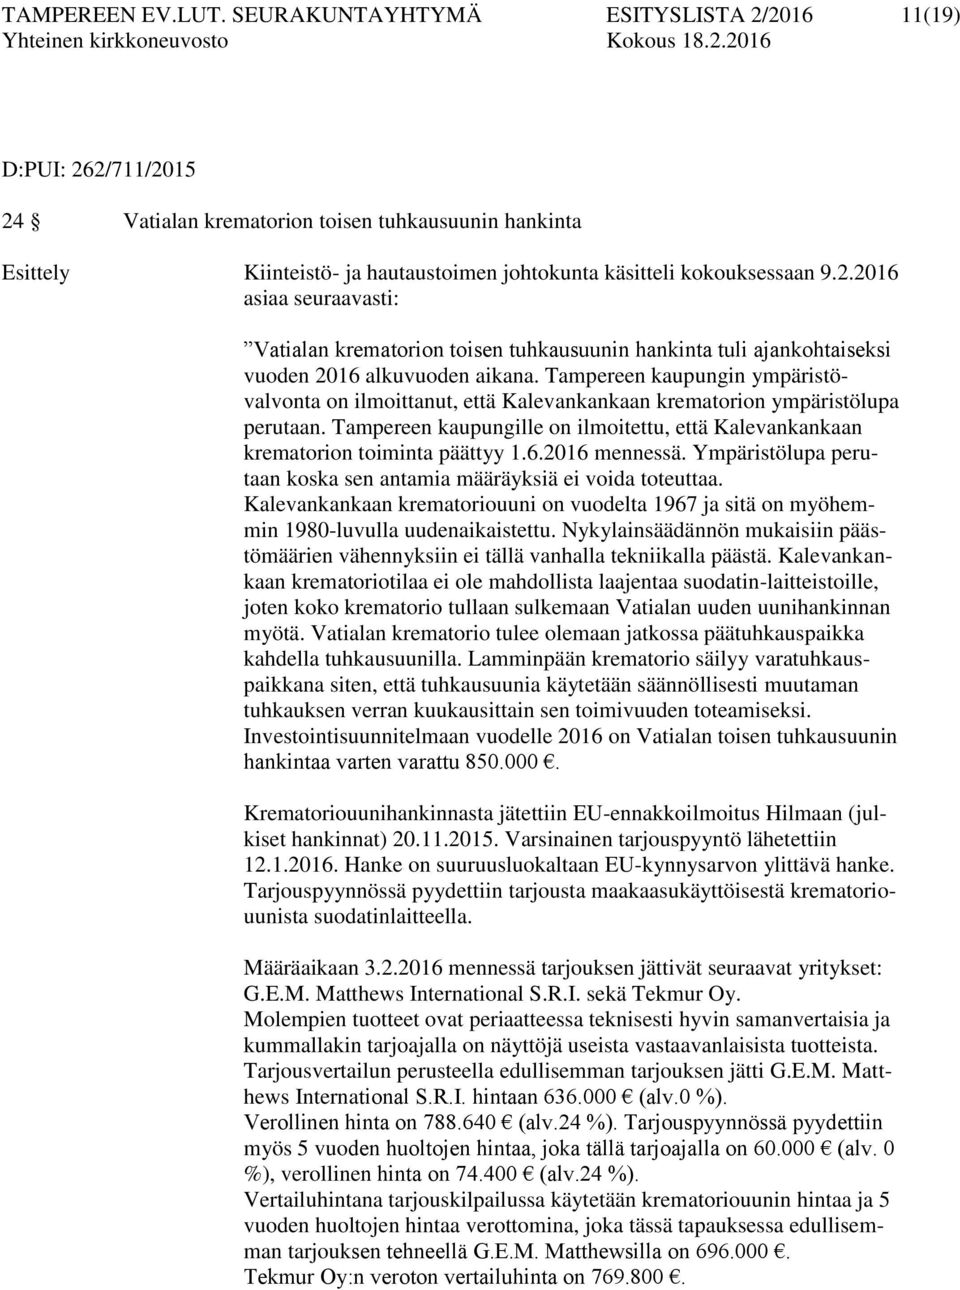 Tampereen kaupungin ympäristövalvonta on ilmoittanut, että Kalevankankaan krematorion ympäristölupa perutaan. Tampereen kaupungille on ilmoitettu, että Kalevankankaan krematorion toiminta päättyy 1.6.